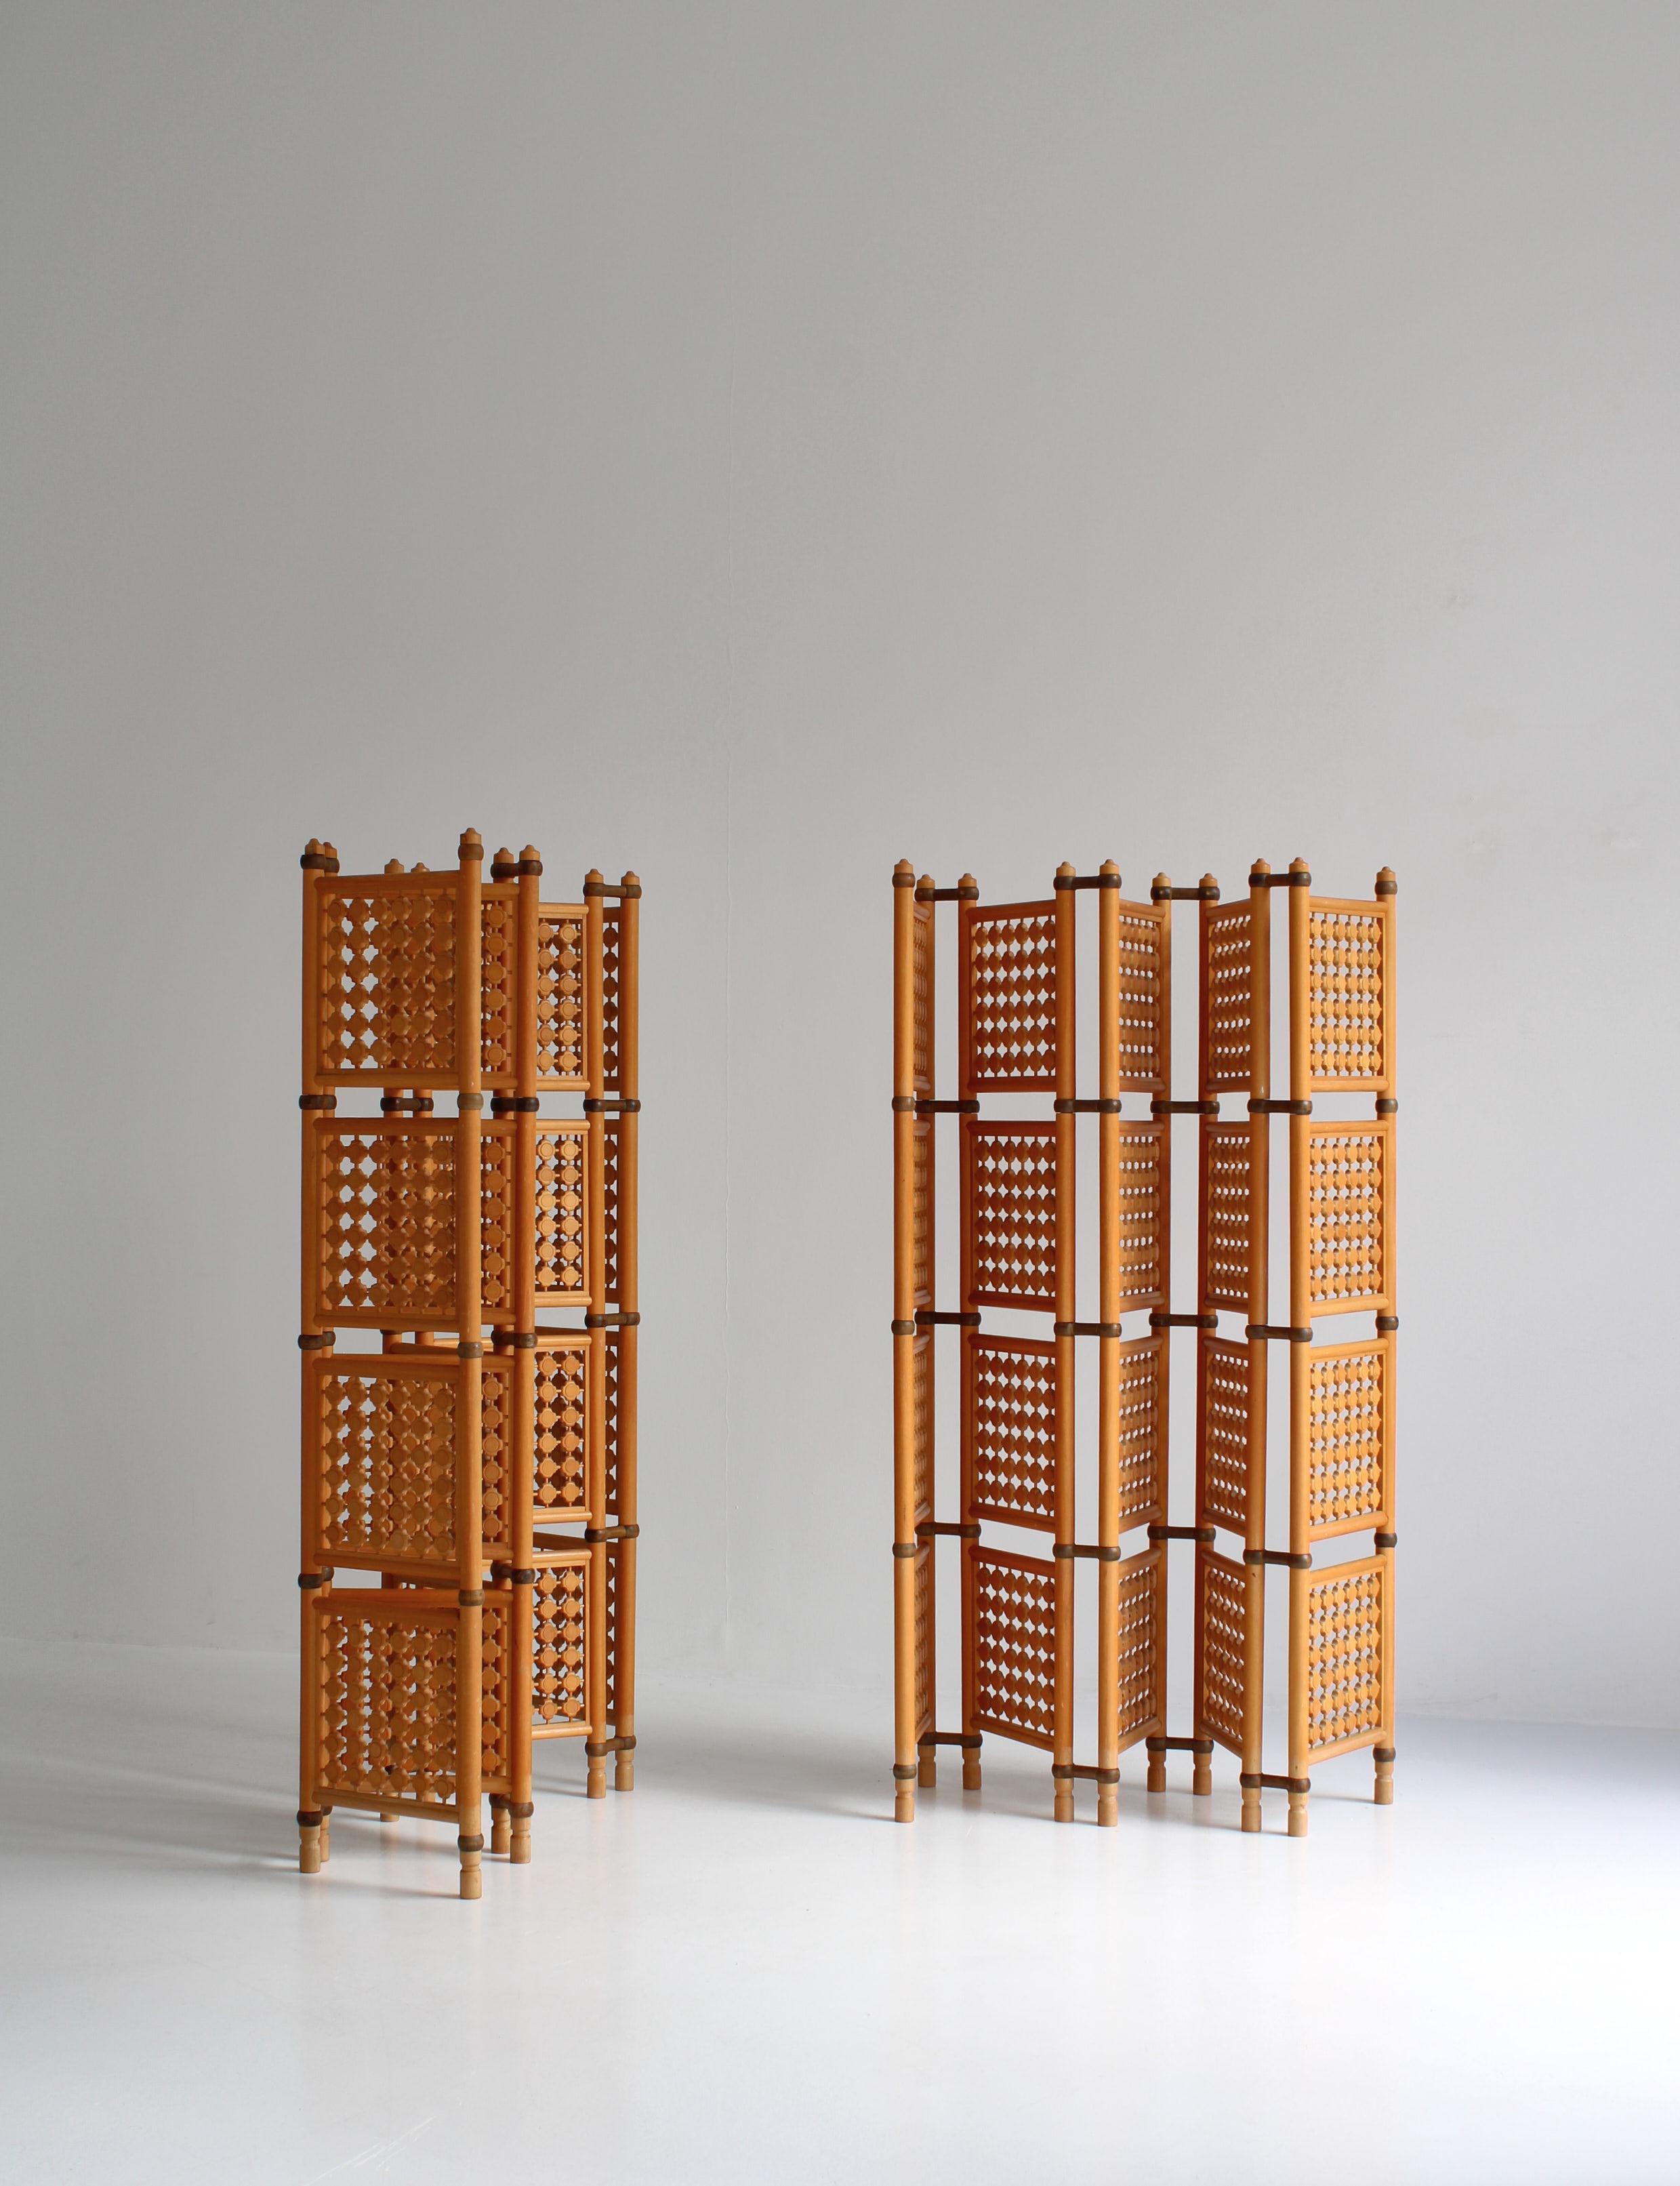 Seltener Satz von 5-seitigen Vintage-Raumteilern aus gebeiztem Buchenholz, handgefertigt in den 1940er Jahren von einem skandinavischen Tischler. Schöner fünfteiliger Paravent, Raumteiler, Einrahmung mit aufwändig geschnitzten geometrischen